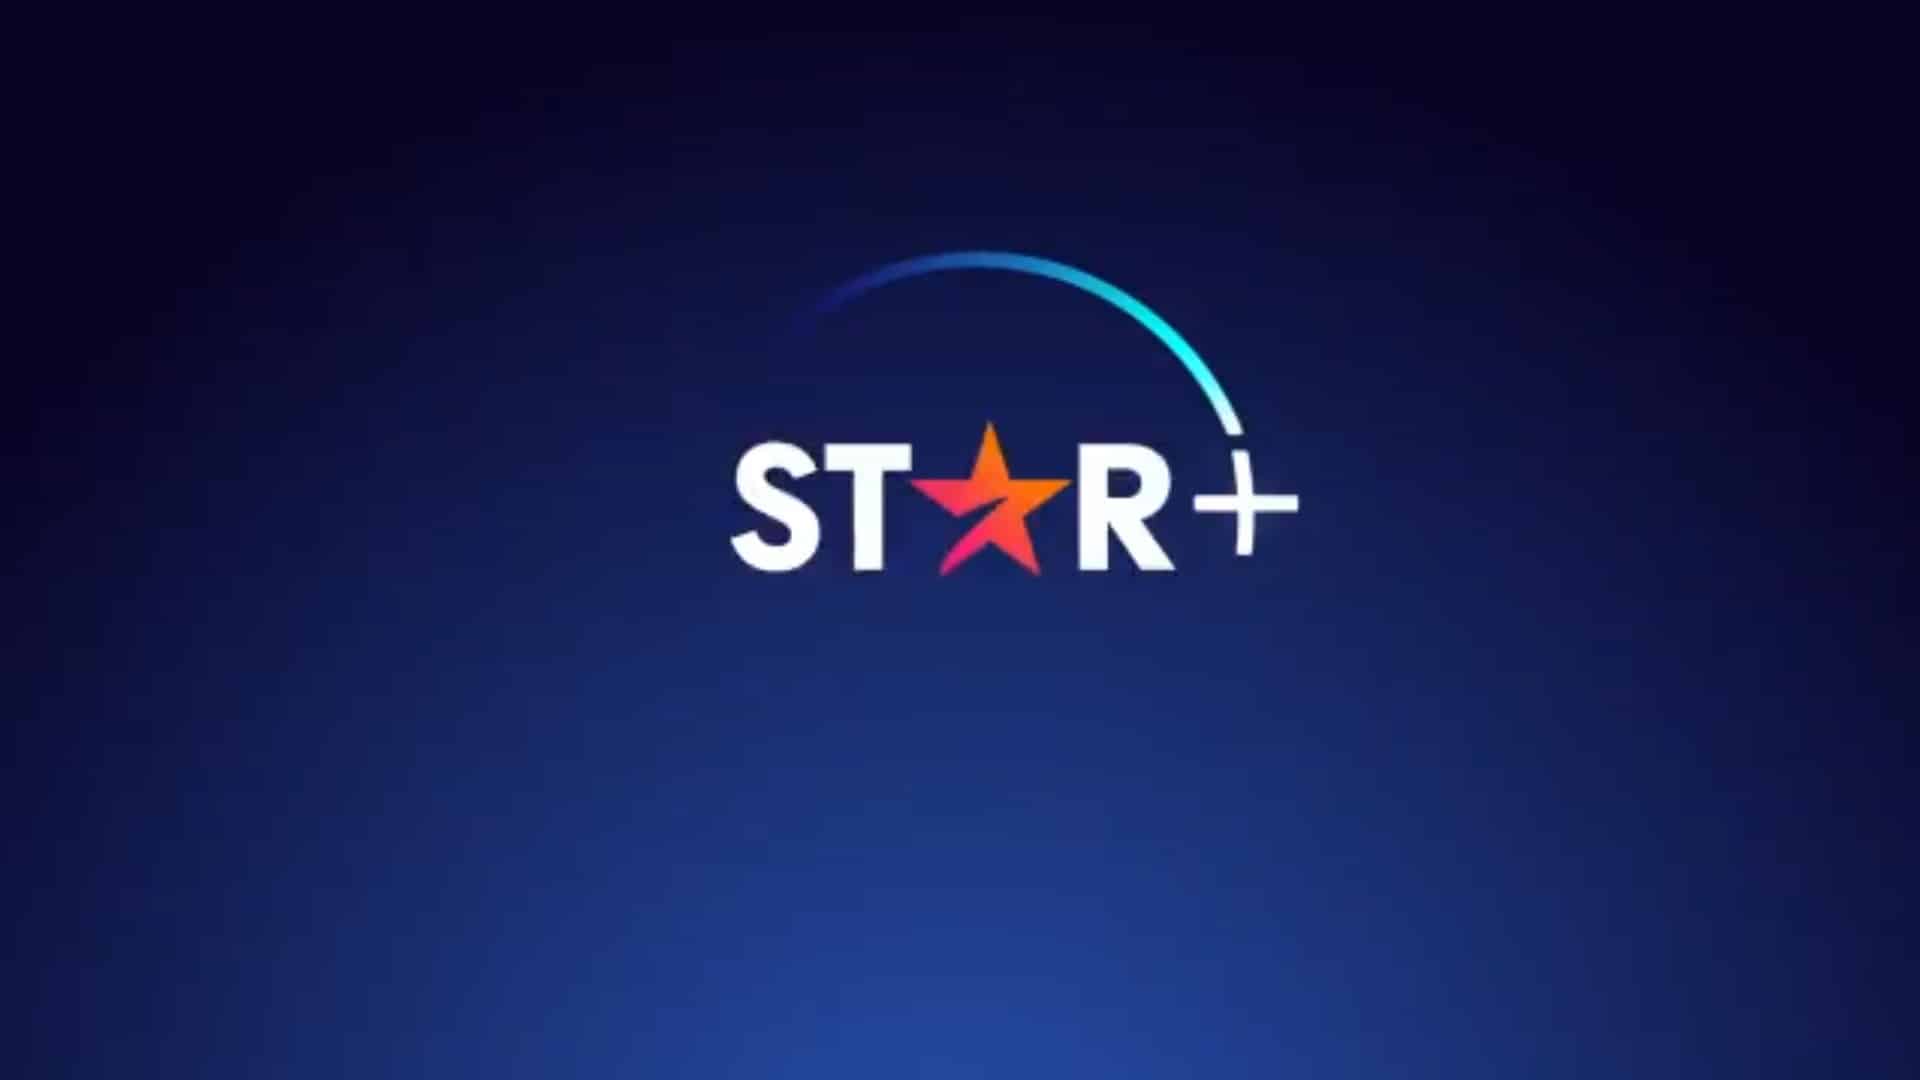 Star+ - Conteúdo e Serviço Disney-star-divulgacao